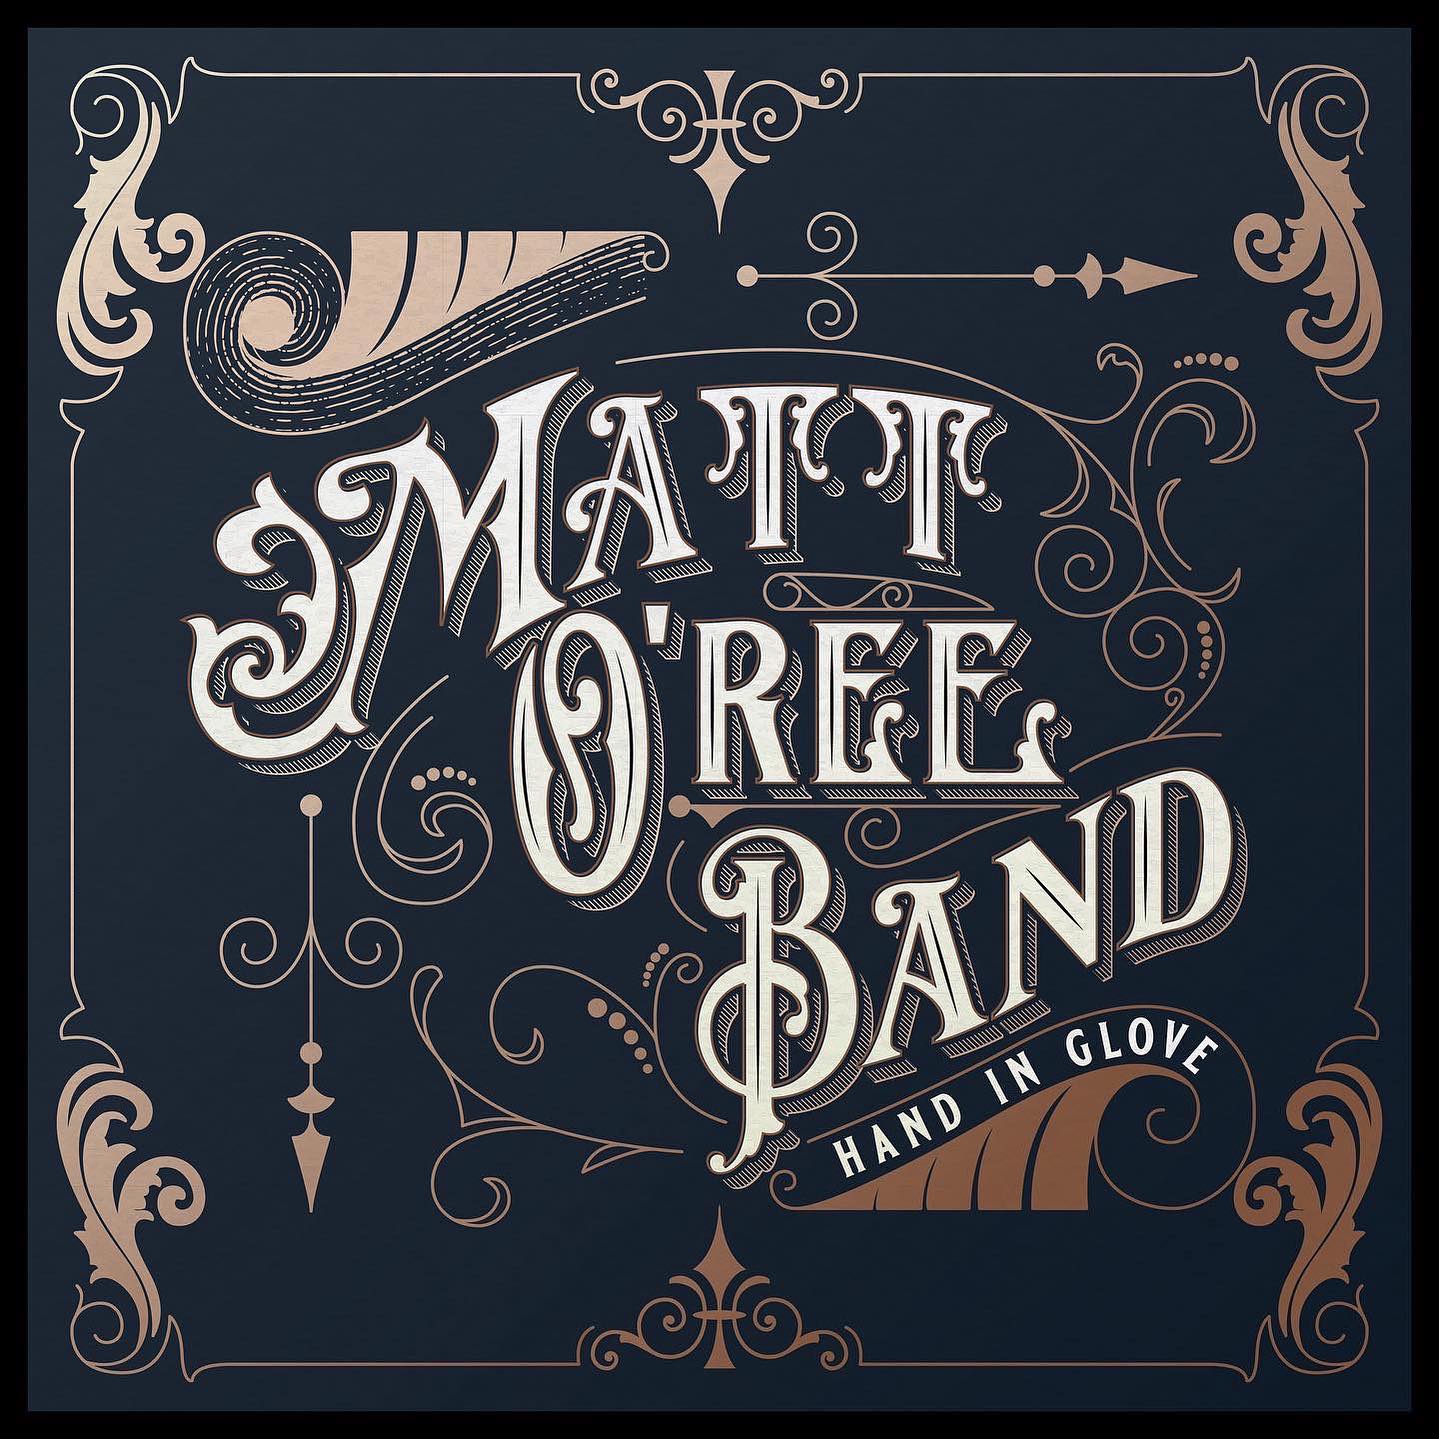 Matt O’Ree Band - Hand In Glove